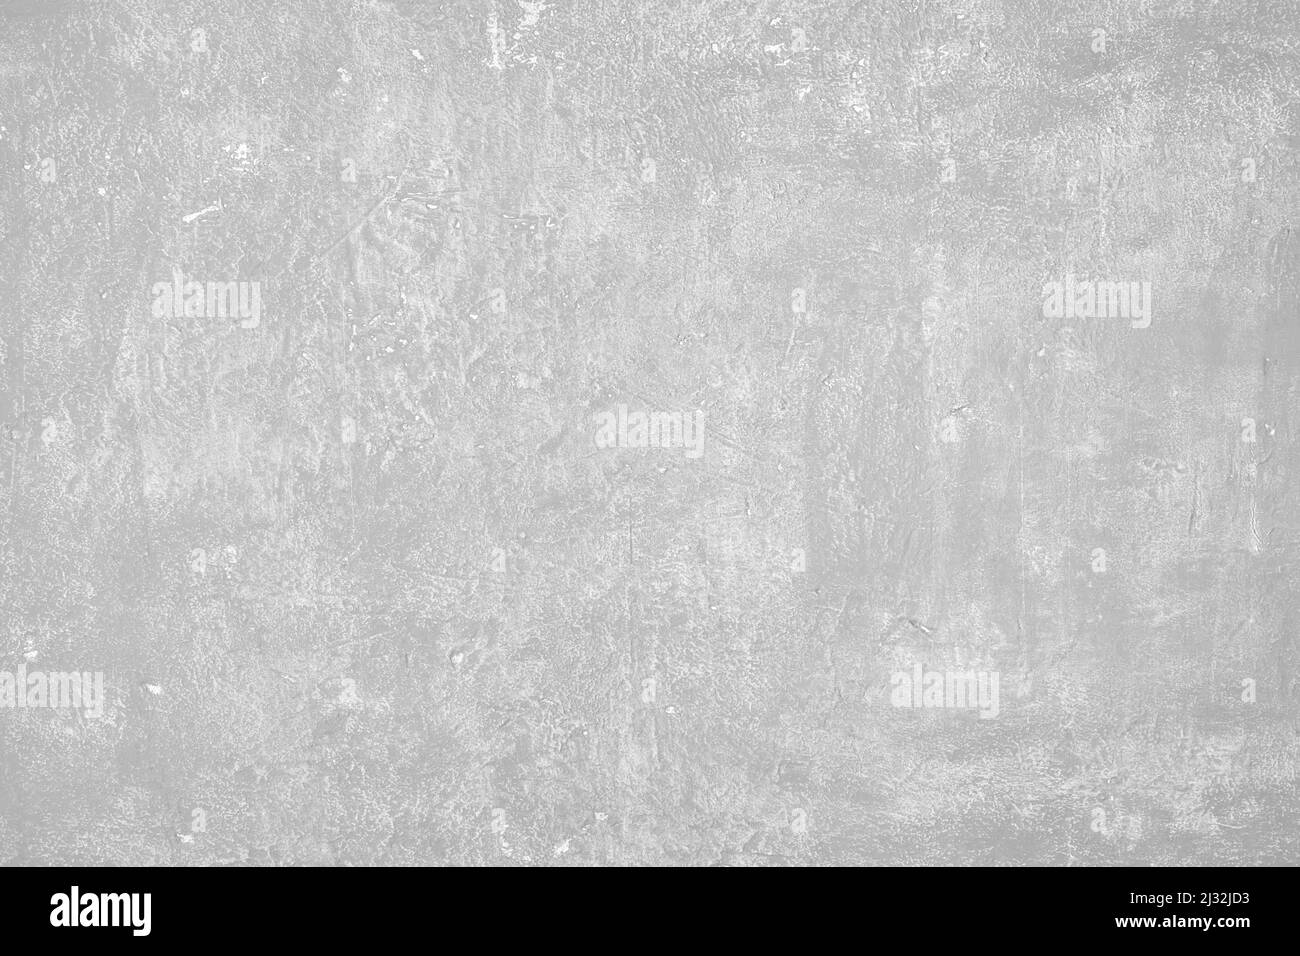 Vista superior de fondo de hormigón gris claro de alta calidad con espacio de copia Foto de stock